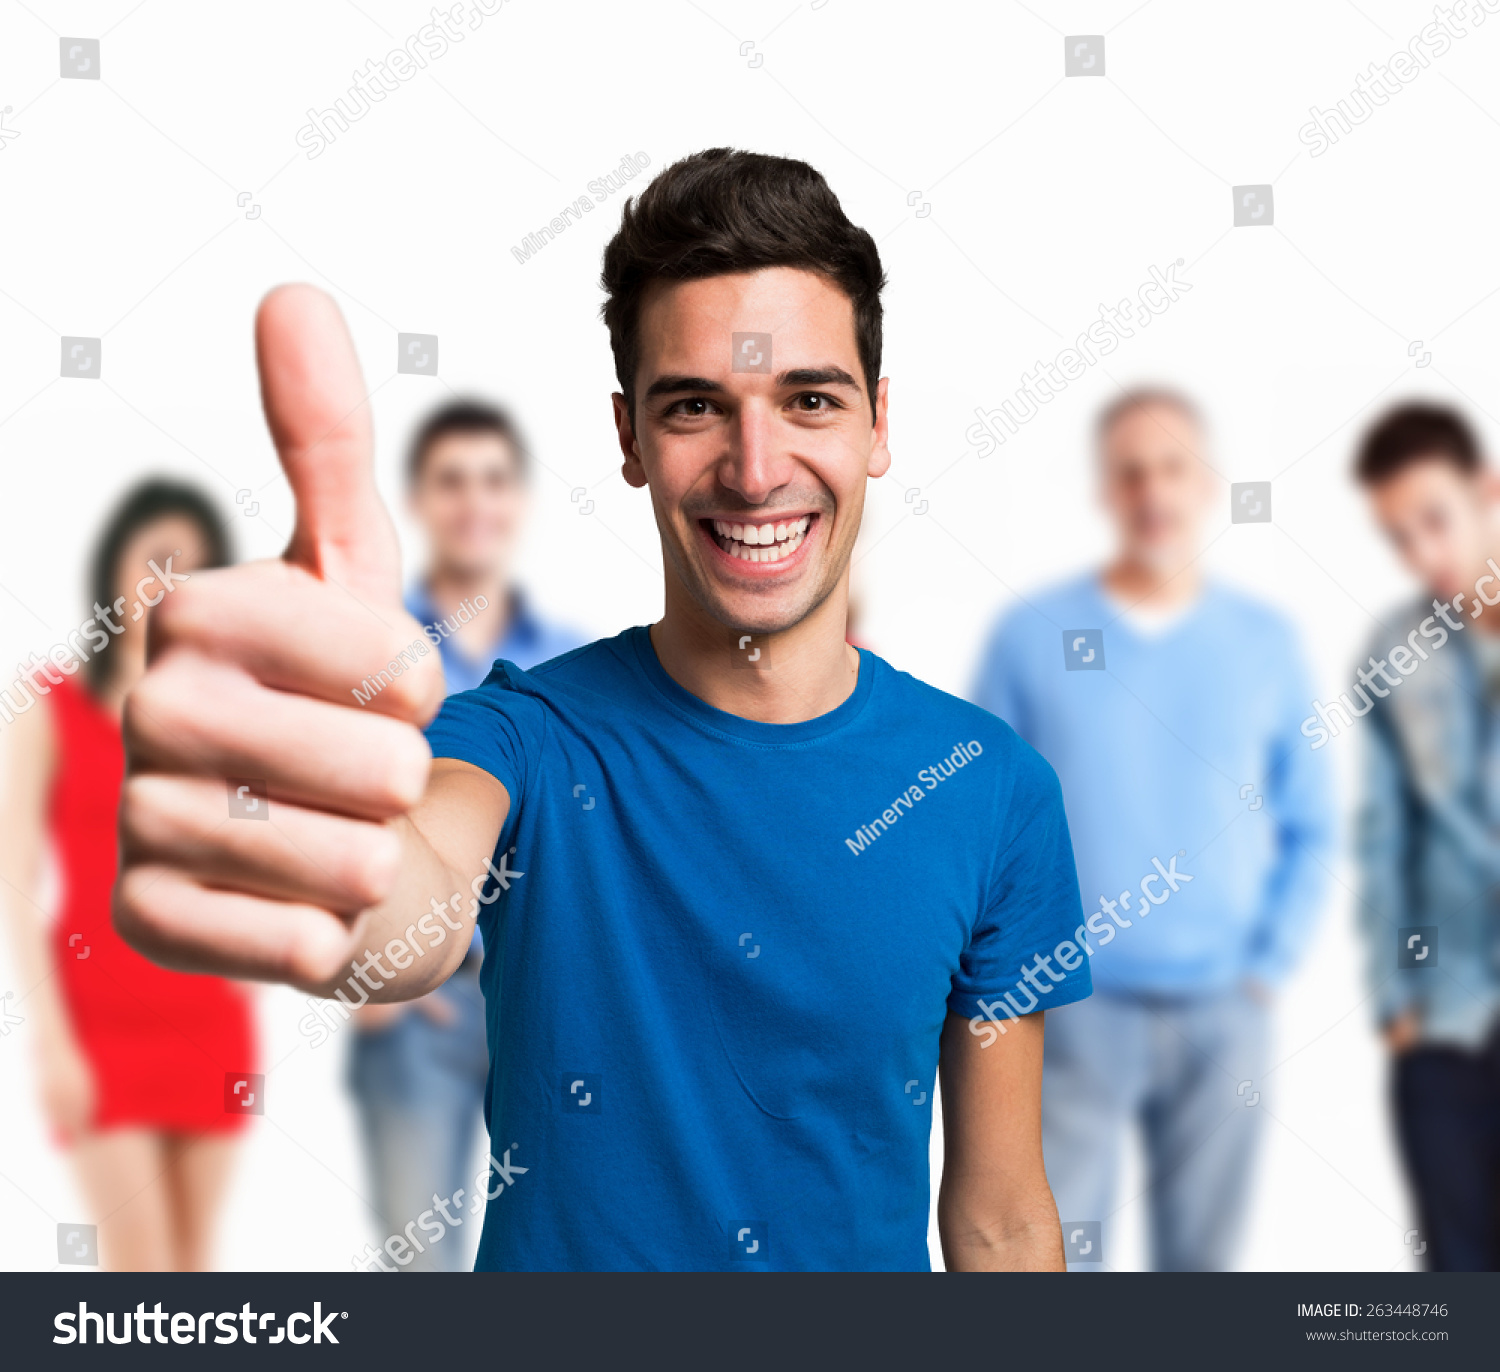 Поддерживаемый покажешься. Мем группа людей показывает большой палец. Man giving suggestion to man.